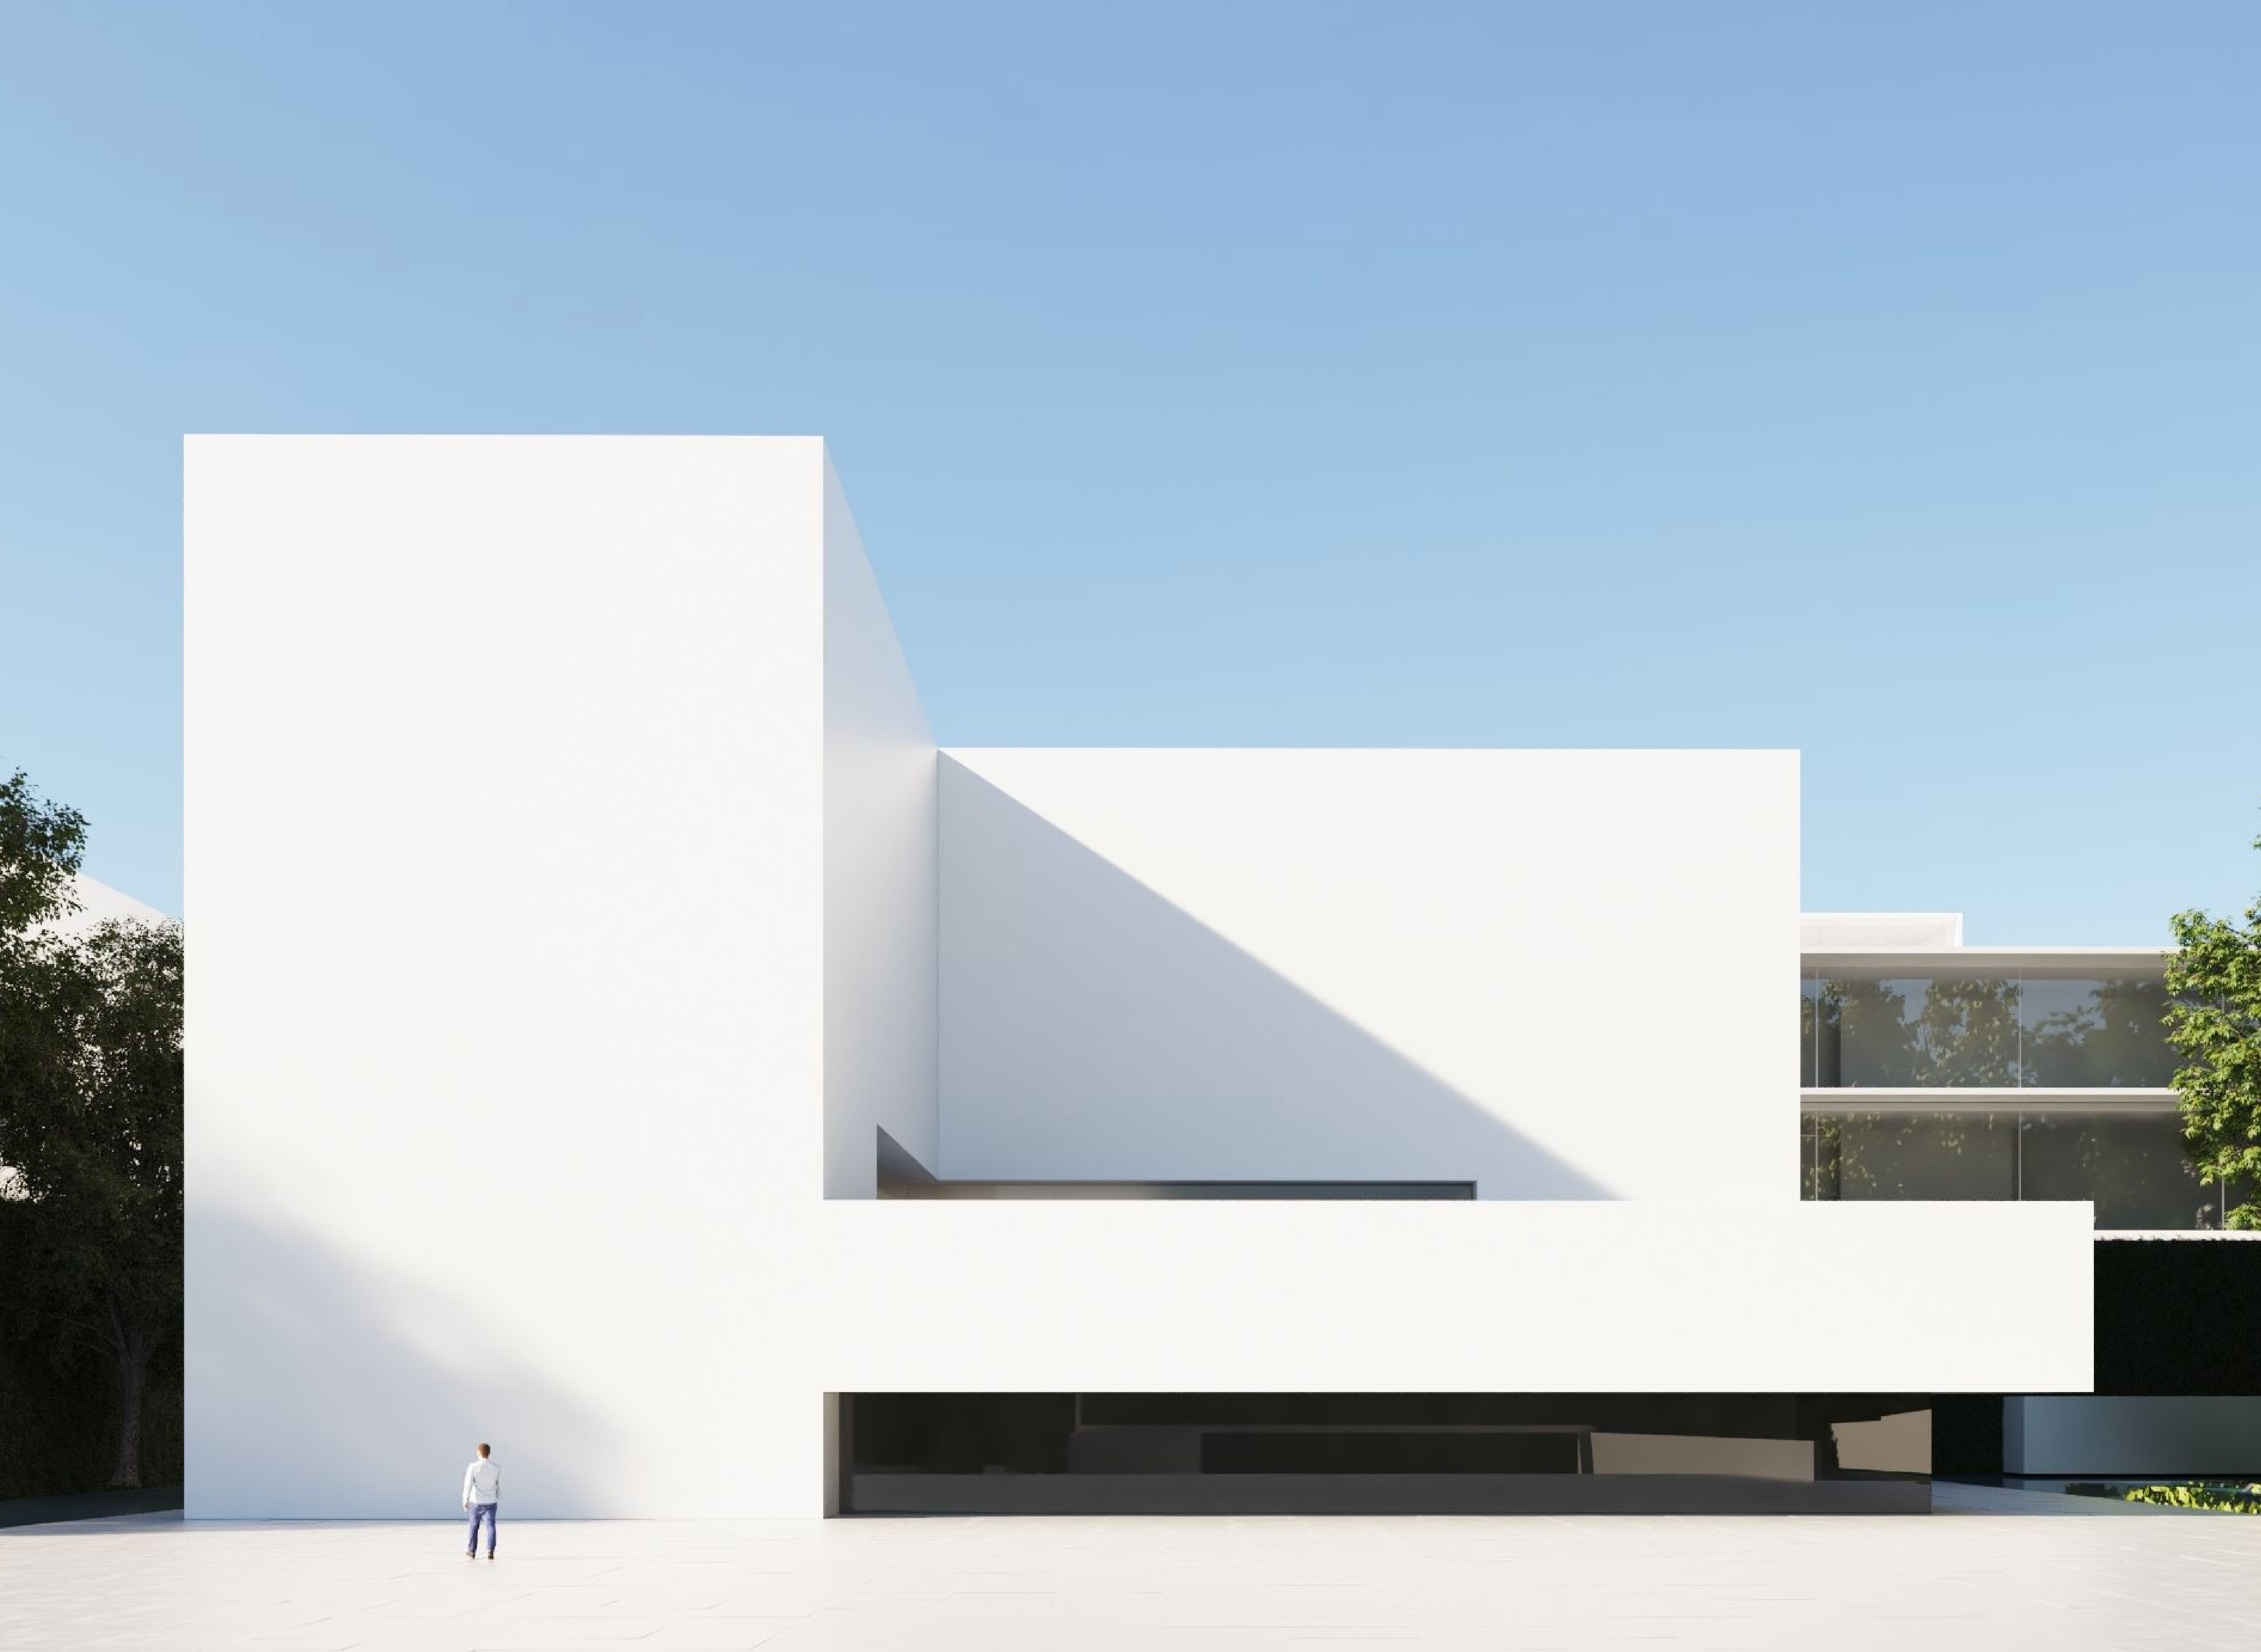 imágen de una estructura arquitectónica minimalista